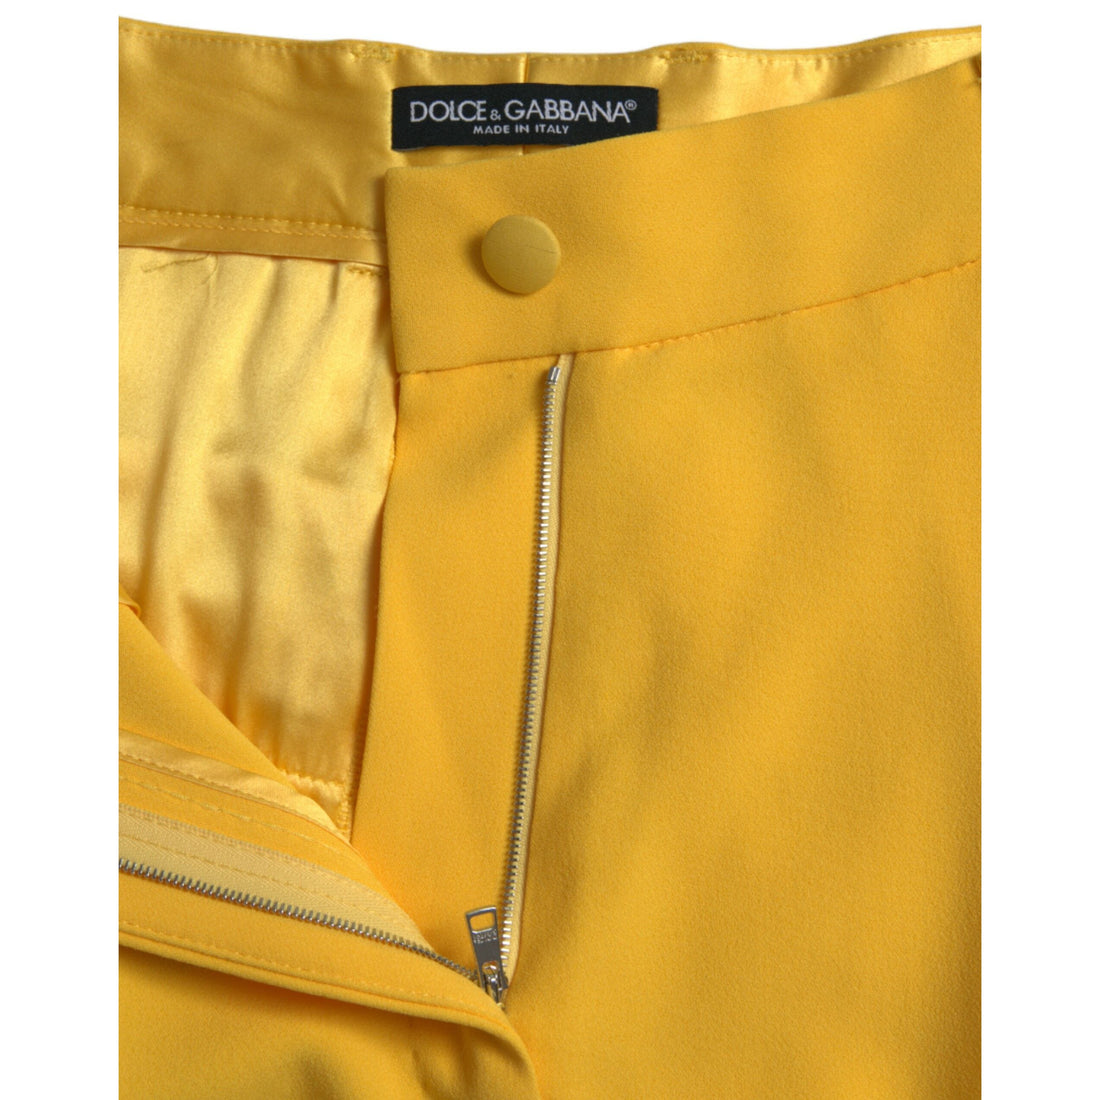 Dolce & Gabbana Yellow High Waist Hot Pants Bermuda Shorts